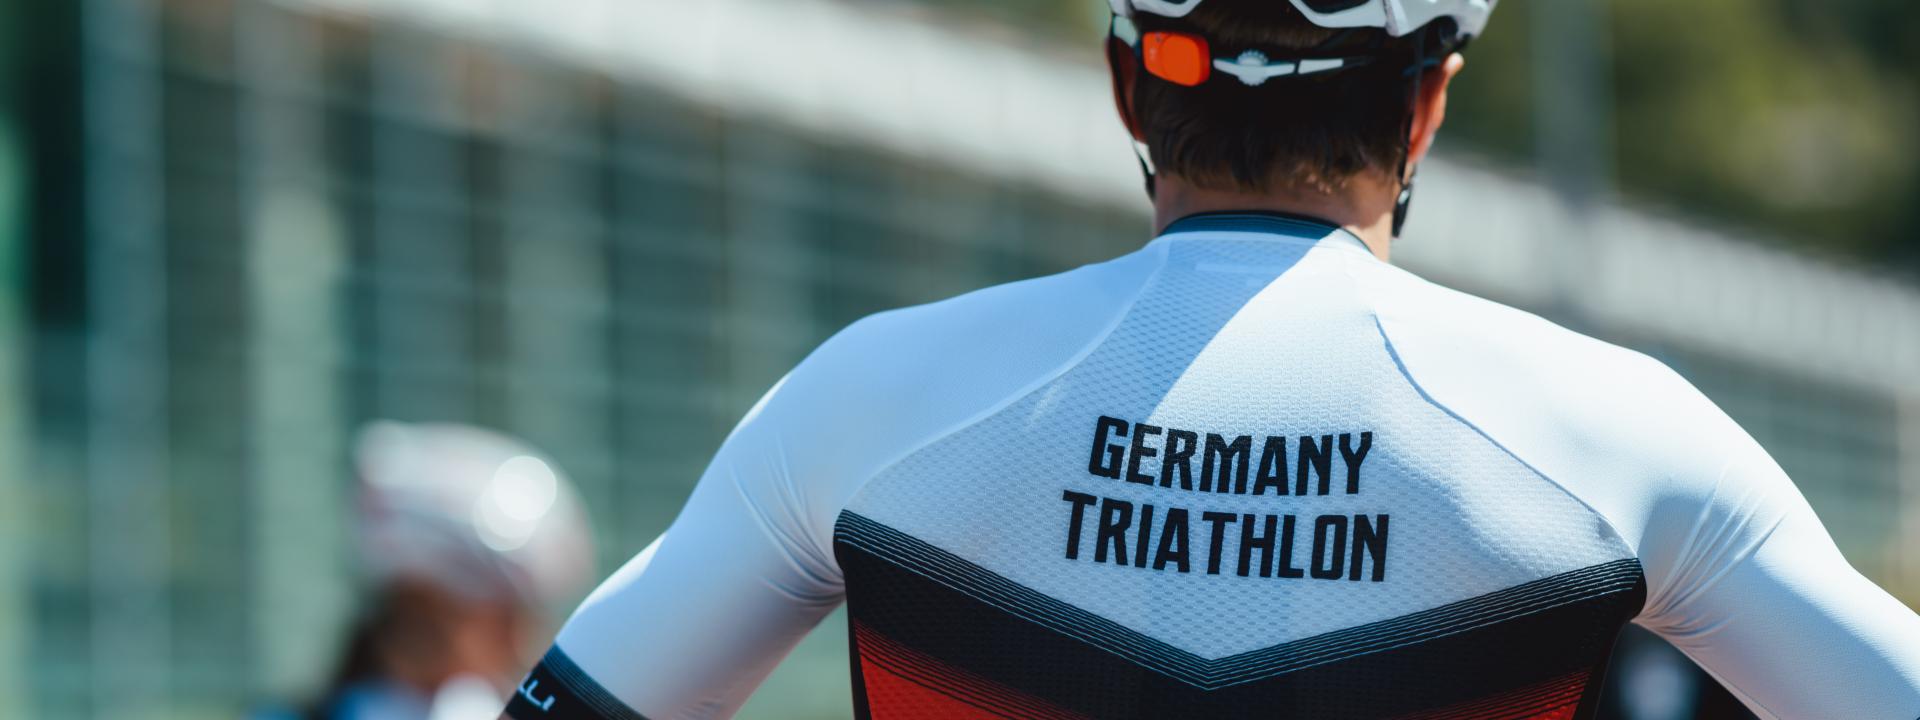 Ein Triathlet in einem Radtrikot in den Deutschlandfarben, auf dem "Germany Triathlon" steht.